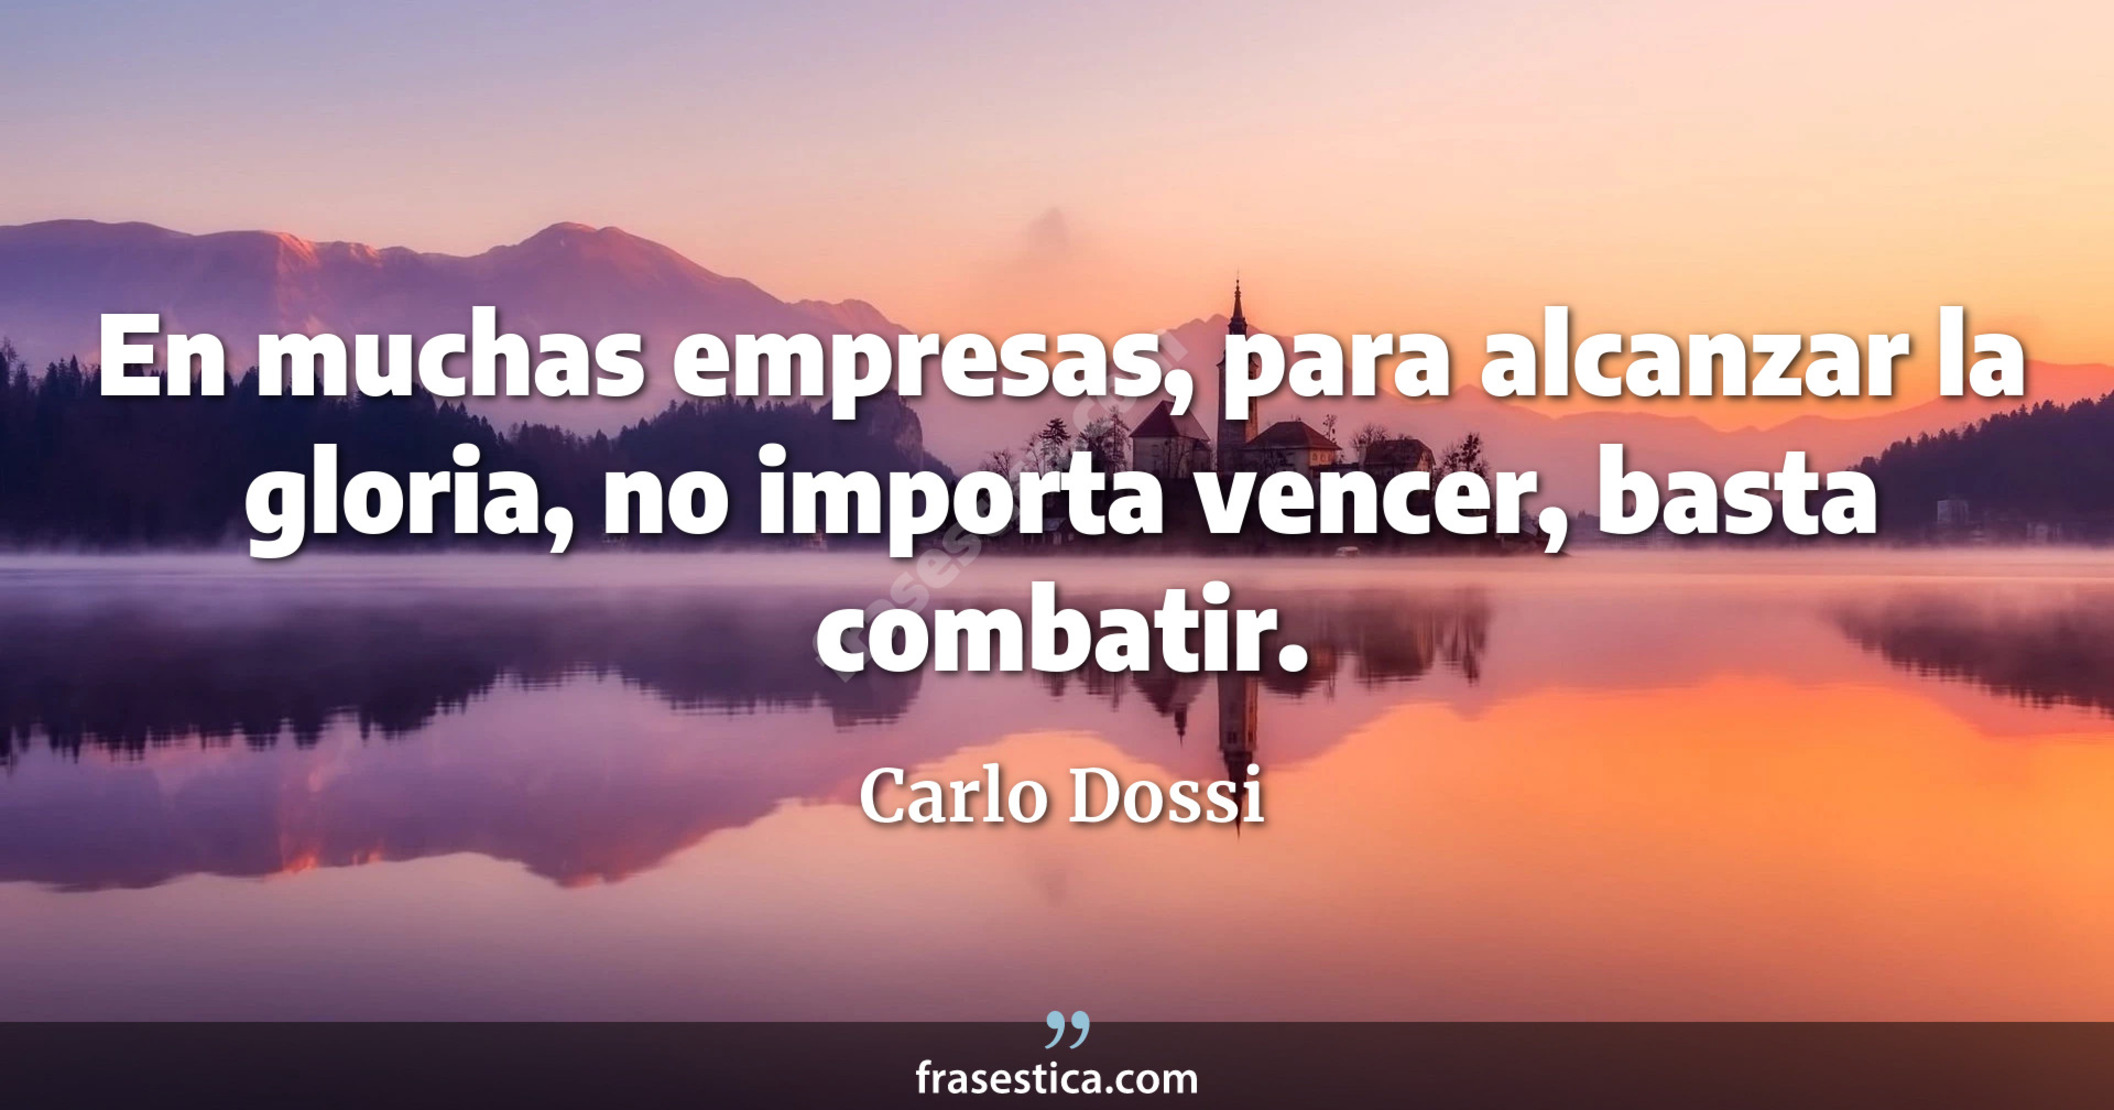 En muchas empresas, para alcanzar la gloria, no importa vencer, basta combatir. - Carlo Dossi